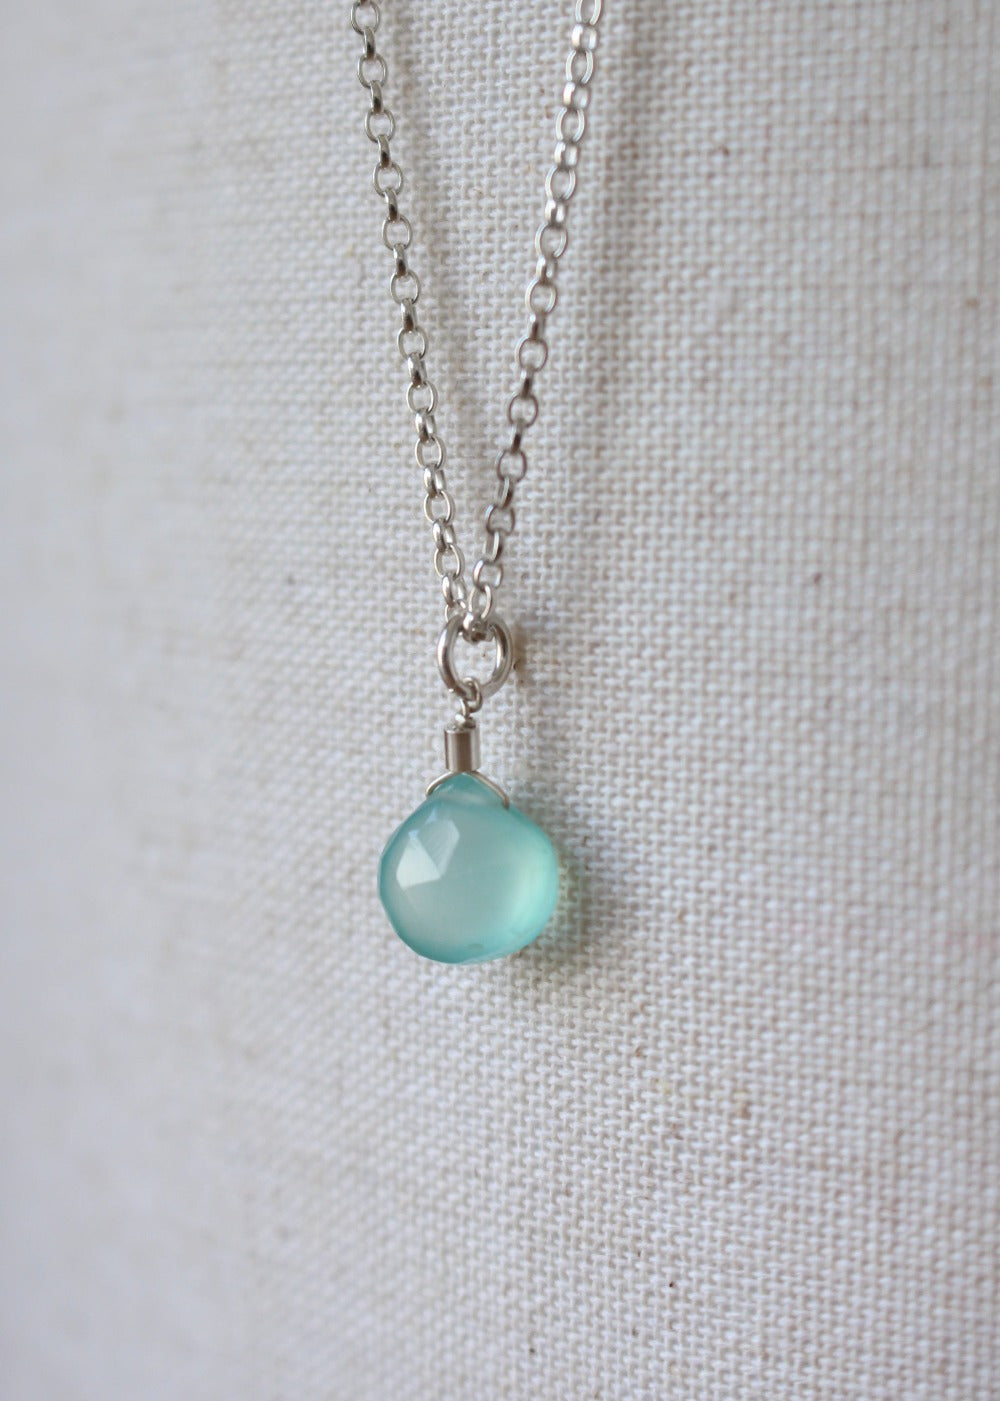 Aqua Chalcedony Pendant Necklace by Sadie Jewellery